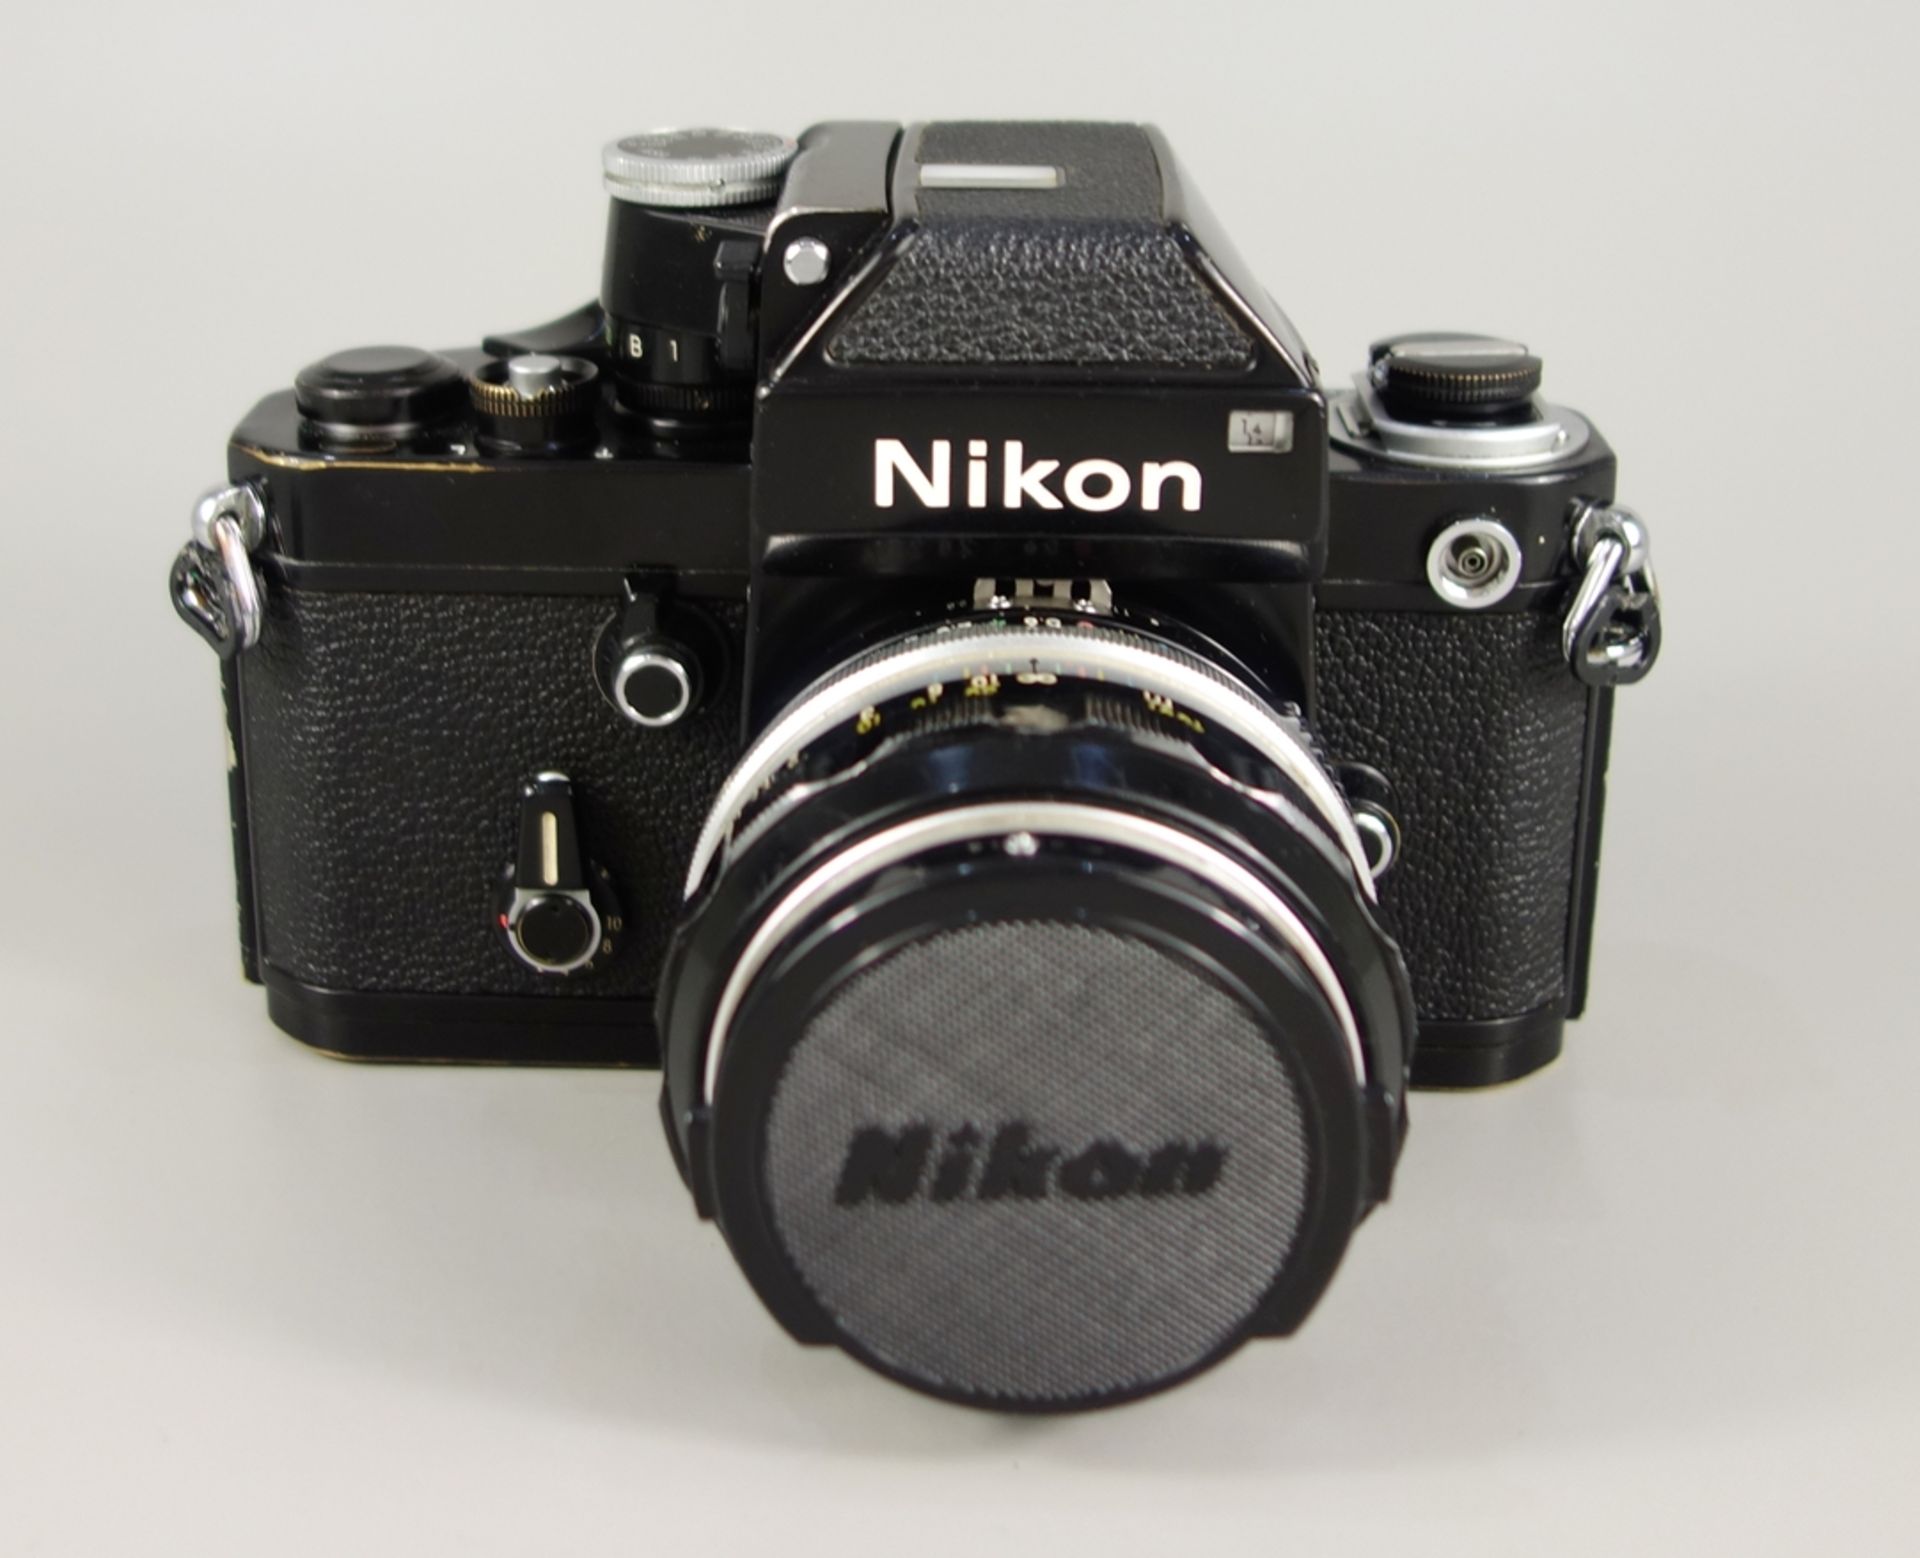 Nikon F2 Photomic, Spiegelreflexkamera, schwarz, 1970er Jahre, Serien-Nr. 7240495, mit Objektiv - Image 2 of 5